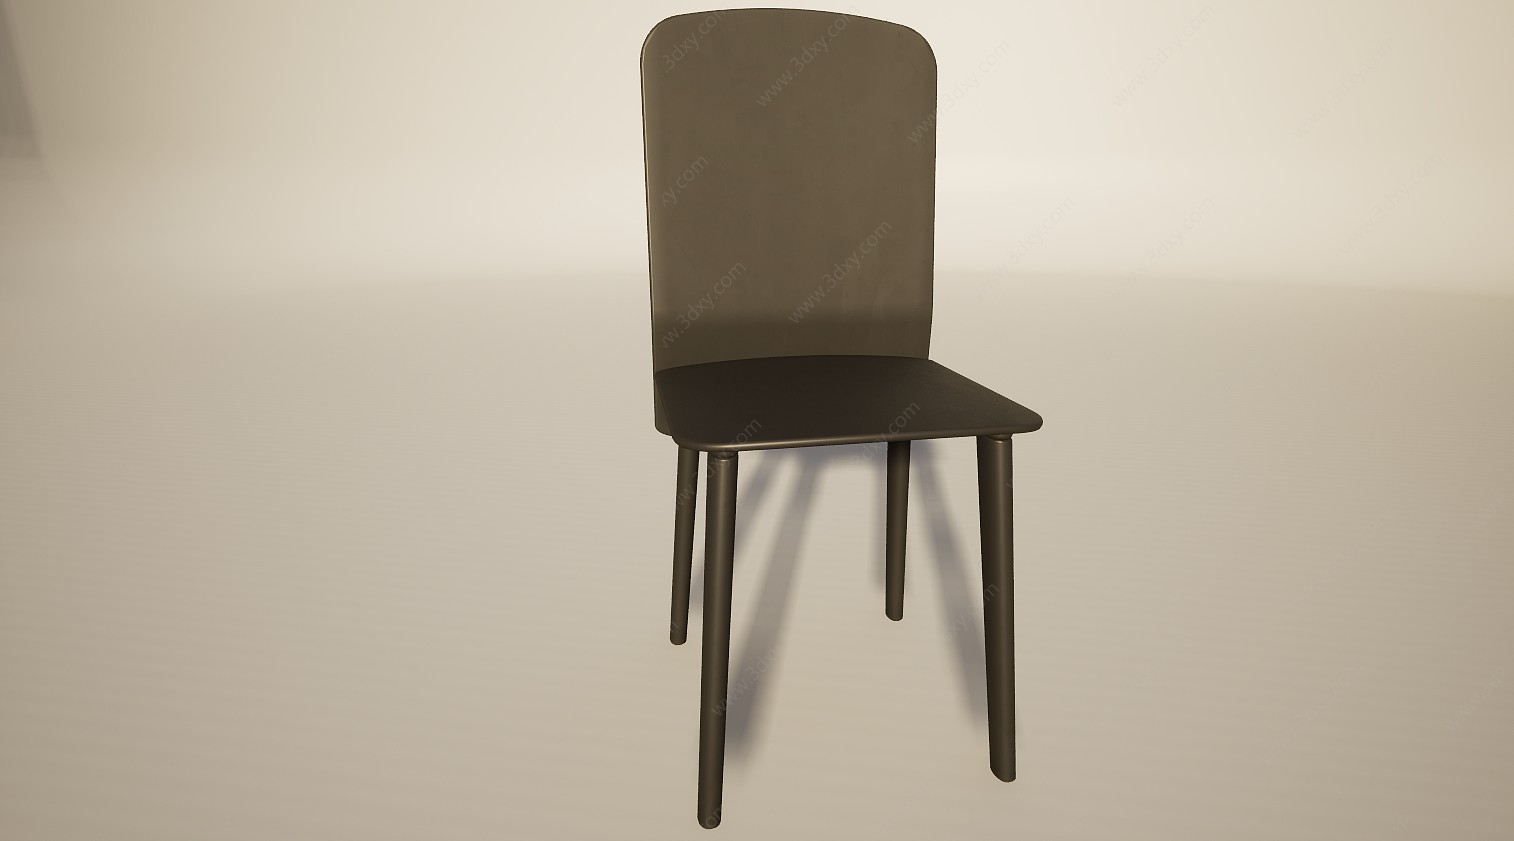 简约休闲吧台餐椅3D模型